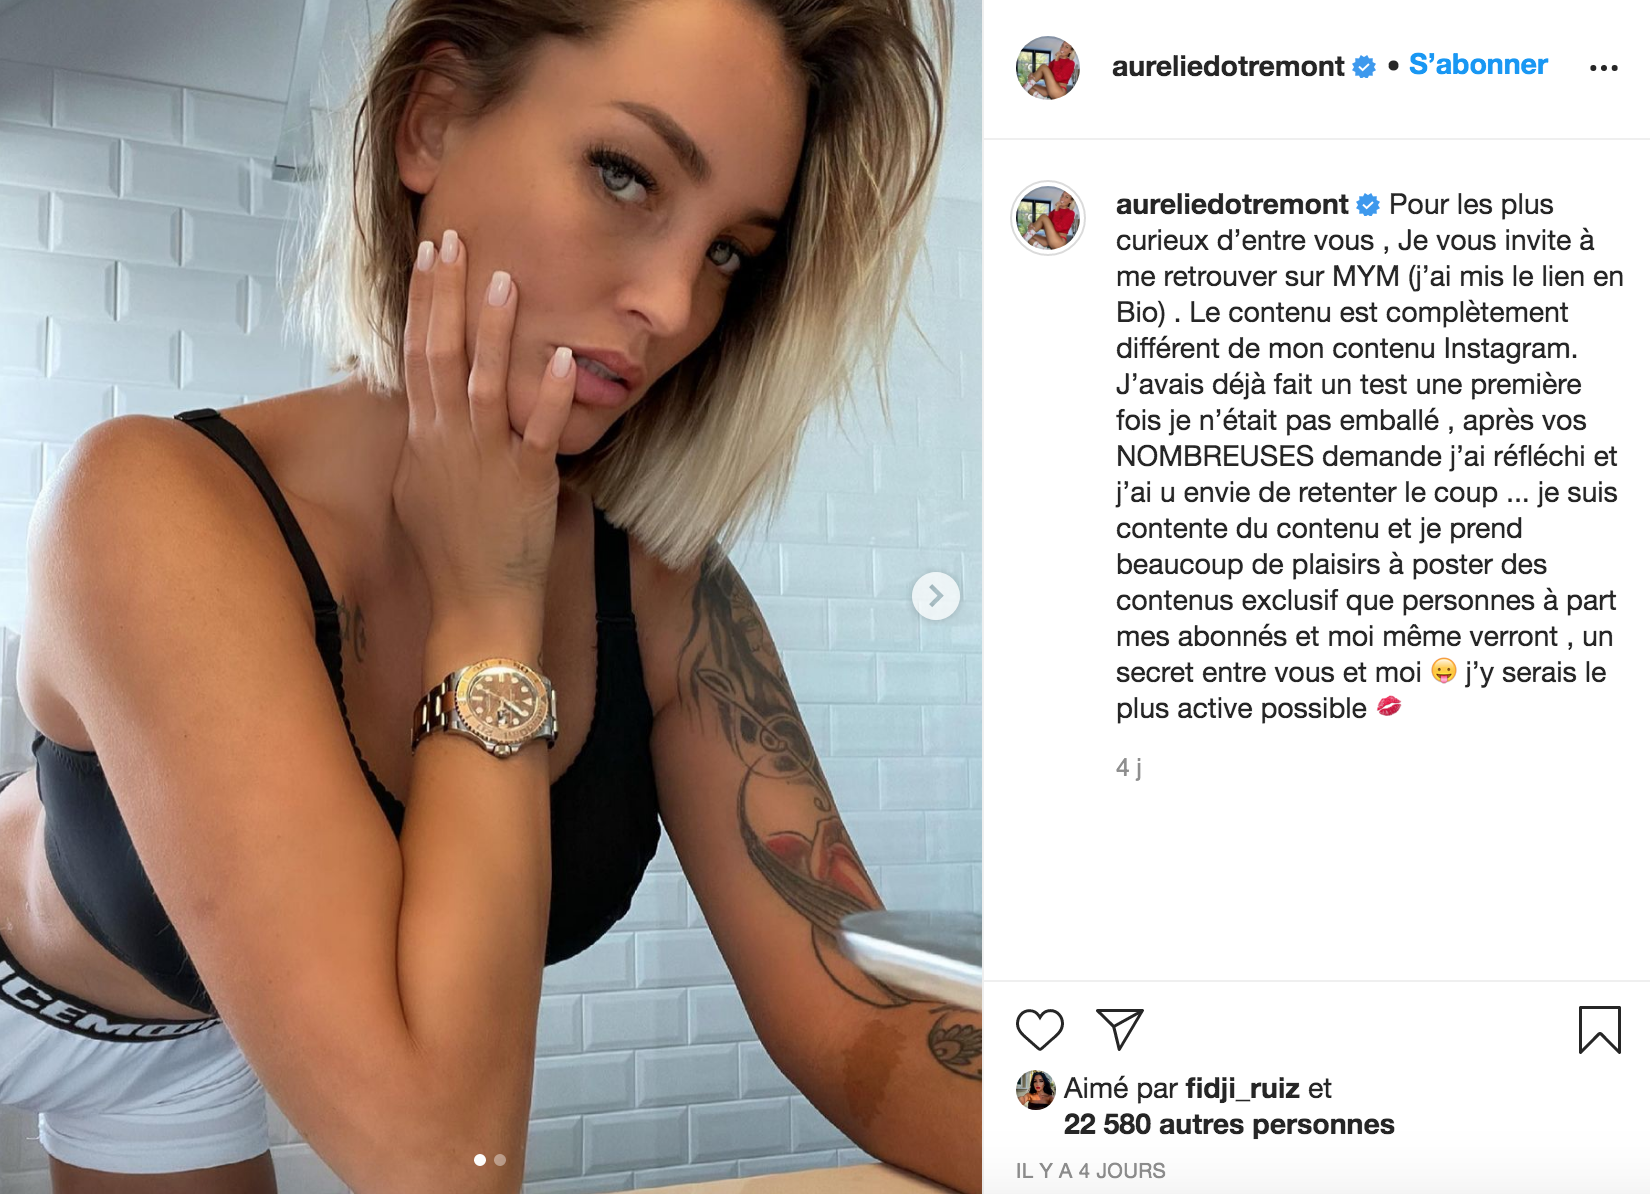  Aurélie Dotremont annonce son lancement sur MYM et s'attire les foudres de ses abonnés @ Instagram